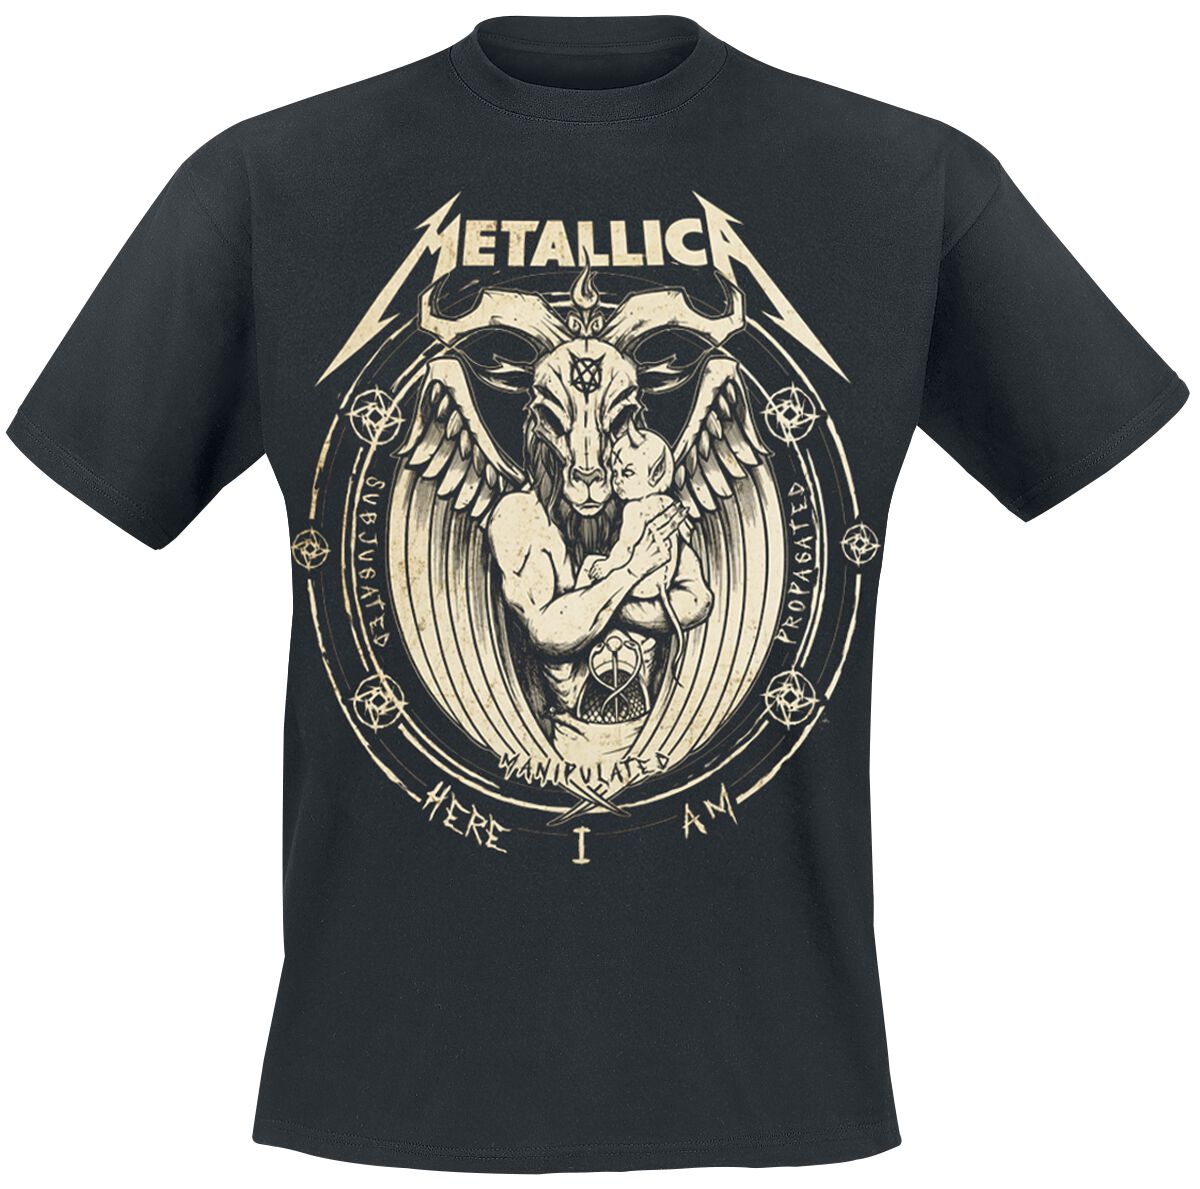 Metallica T-Shirt - Darkness Son - S bis 5XL - für Männer - Größe M - schwarz  - Lizenziertes Merchandise!